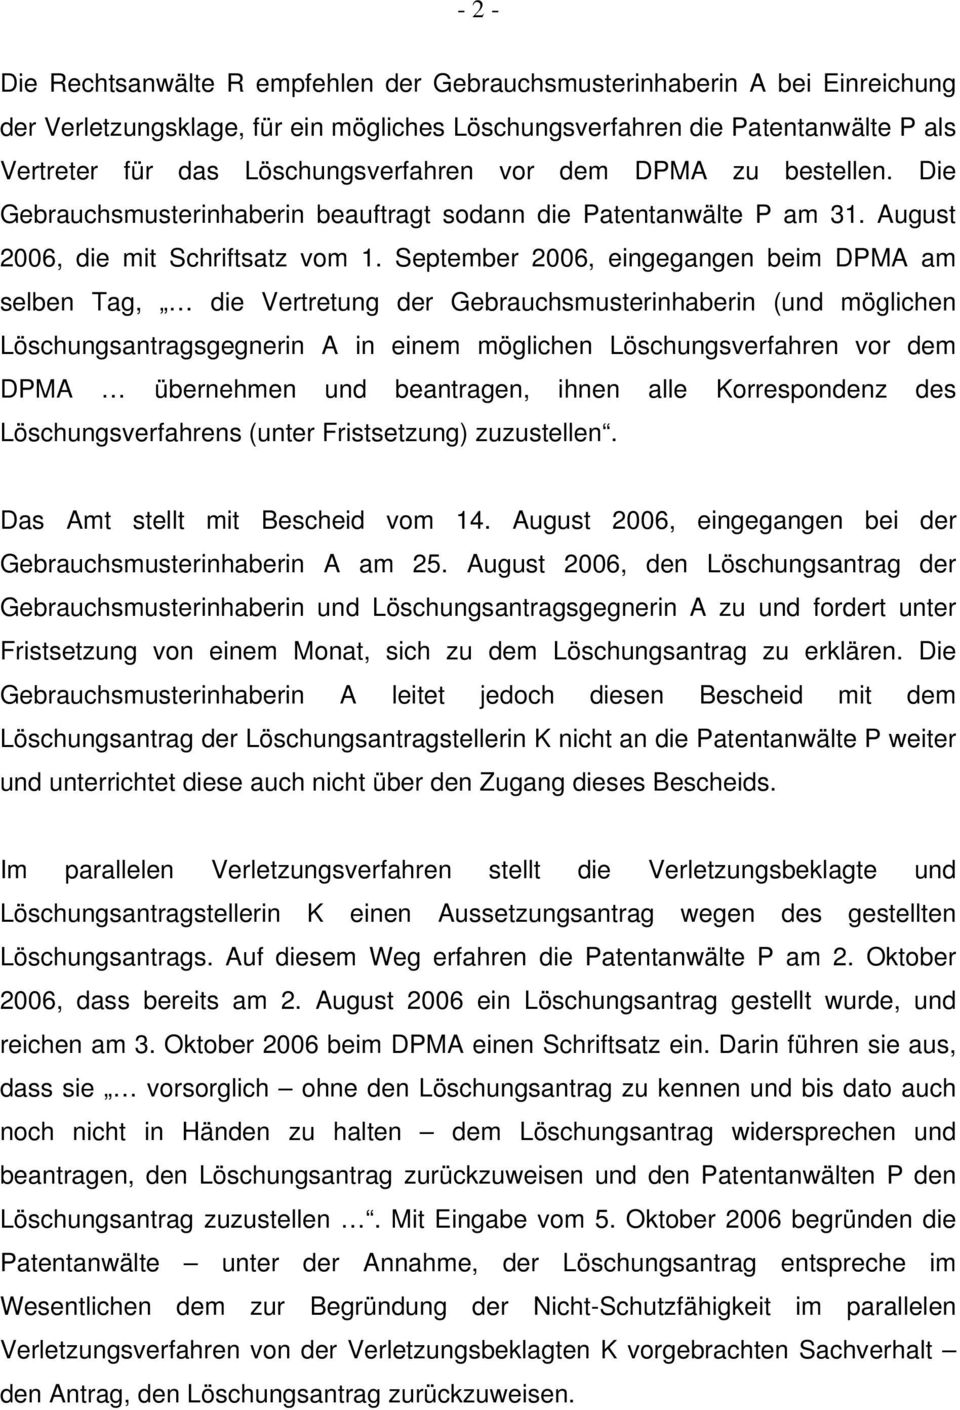 September 2006, eingegangen beim DPMA am selben Tag, die Vertretung der Gebrauchsmusterinhaberin (und möglichen Löschungsantragsgegnerin A in einem möglichen Löschungsverfahren vor dem DPMA